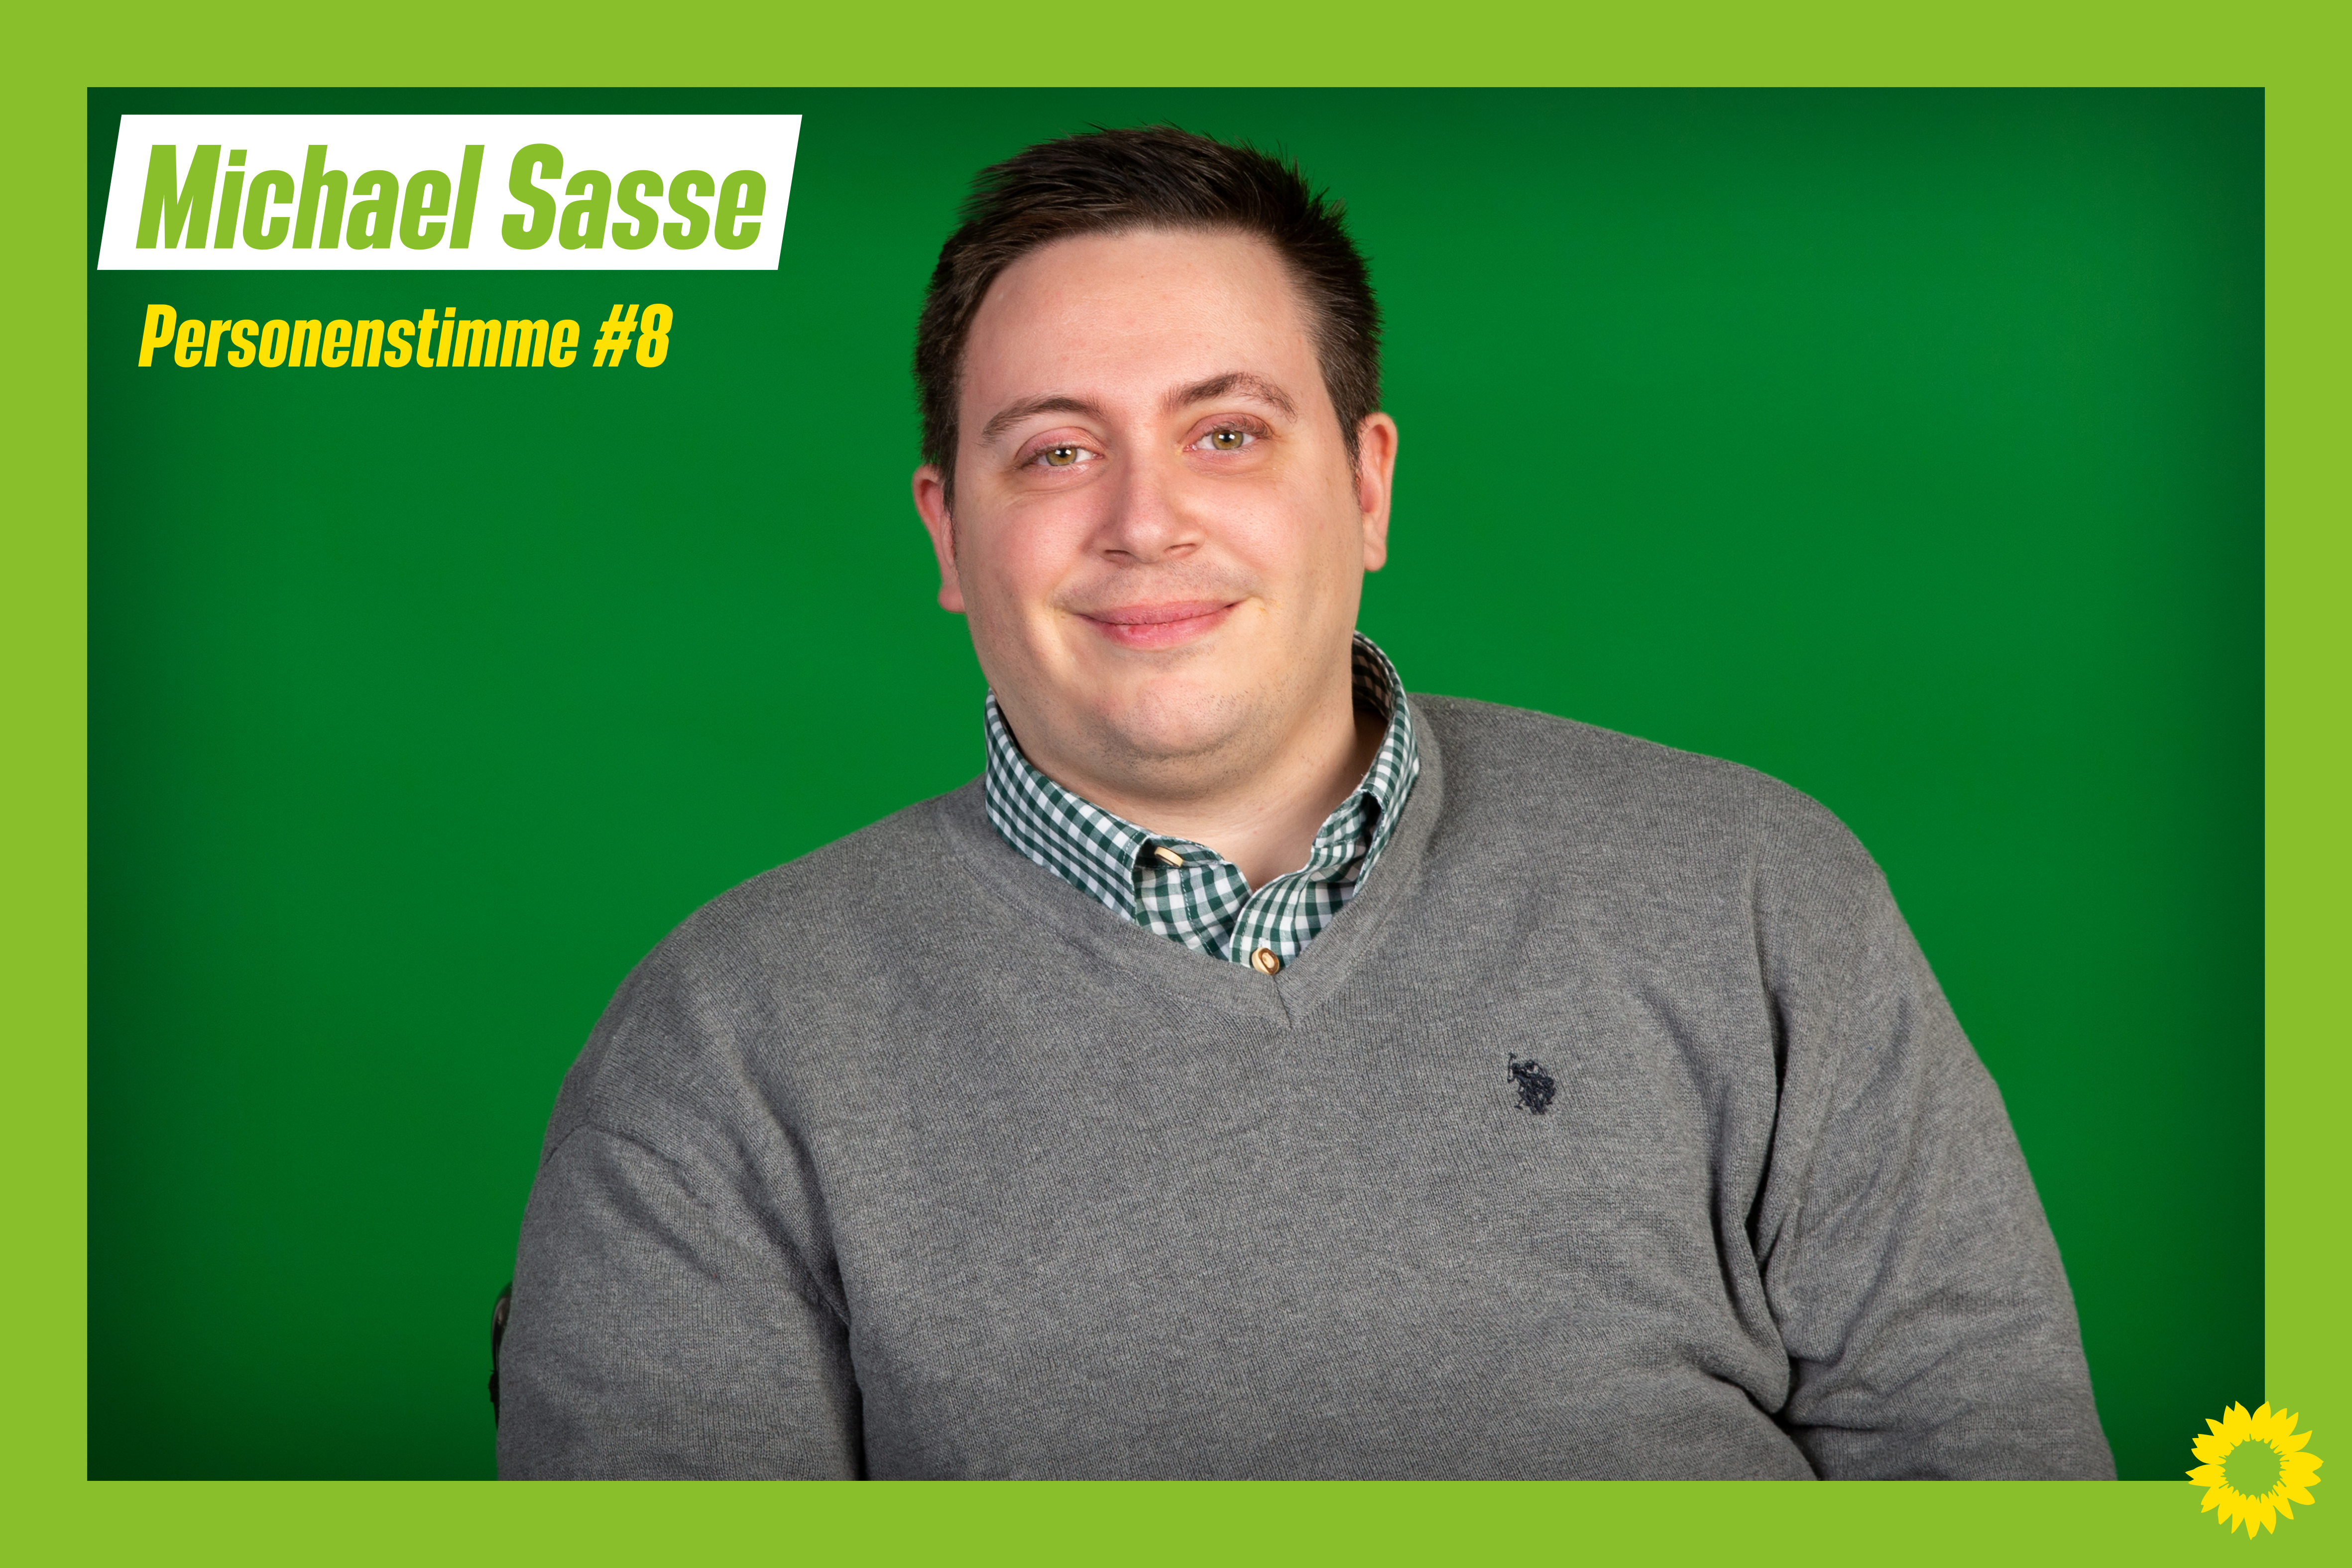 Bild von Michael Sasse im Porträt im Grünen Wahlkampfdesign. Oben Links steht "Michael Sasse, Personenstimme Nummer 8"